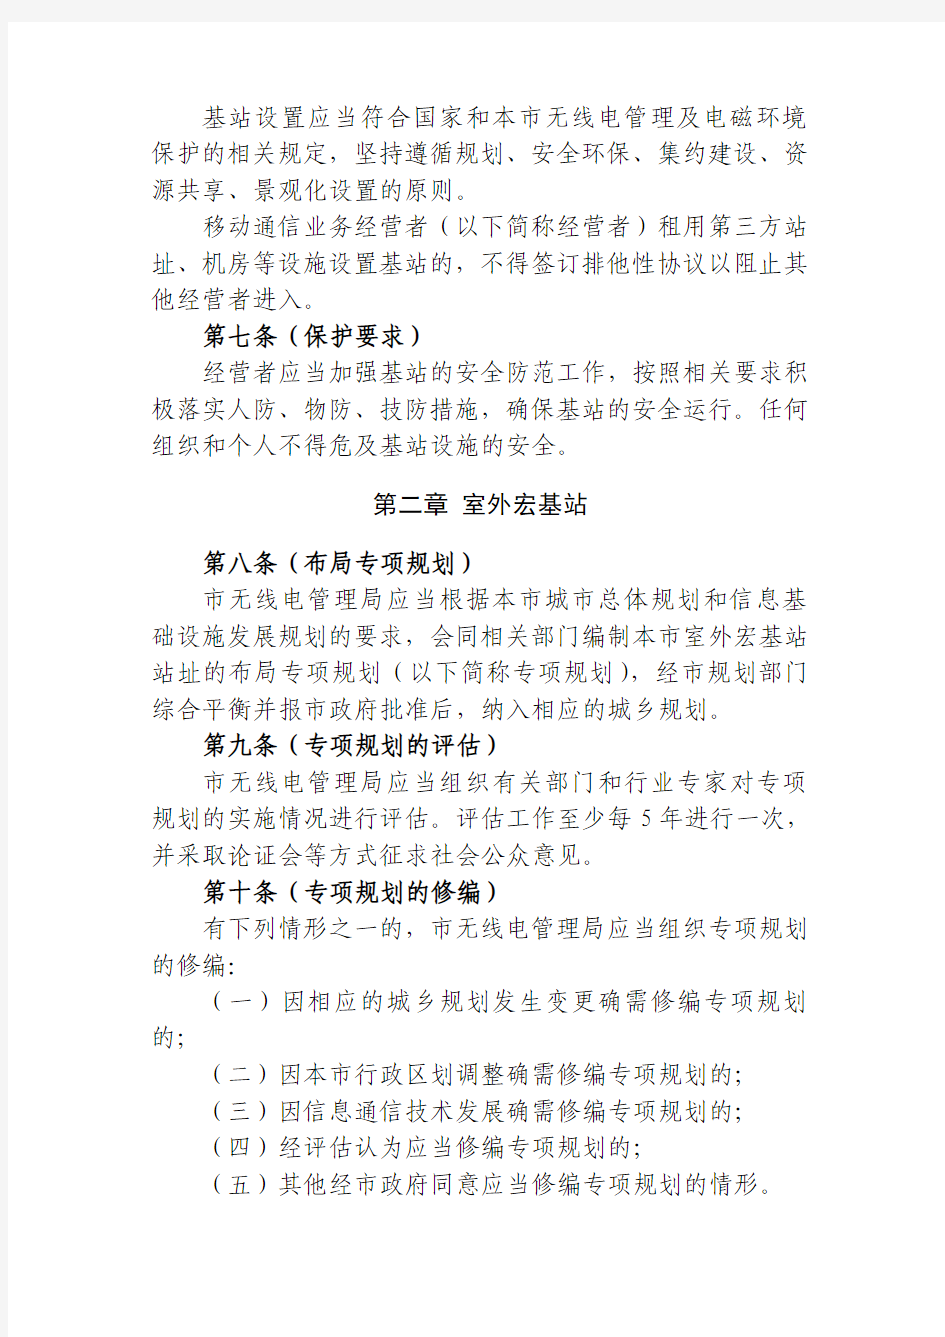 上海市公用移动通信基站管理办法实施细则